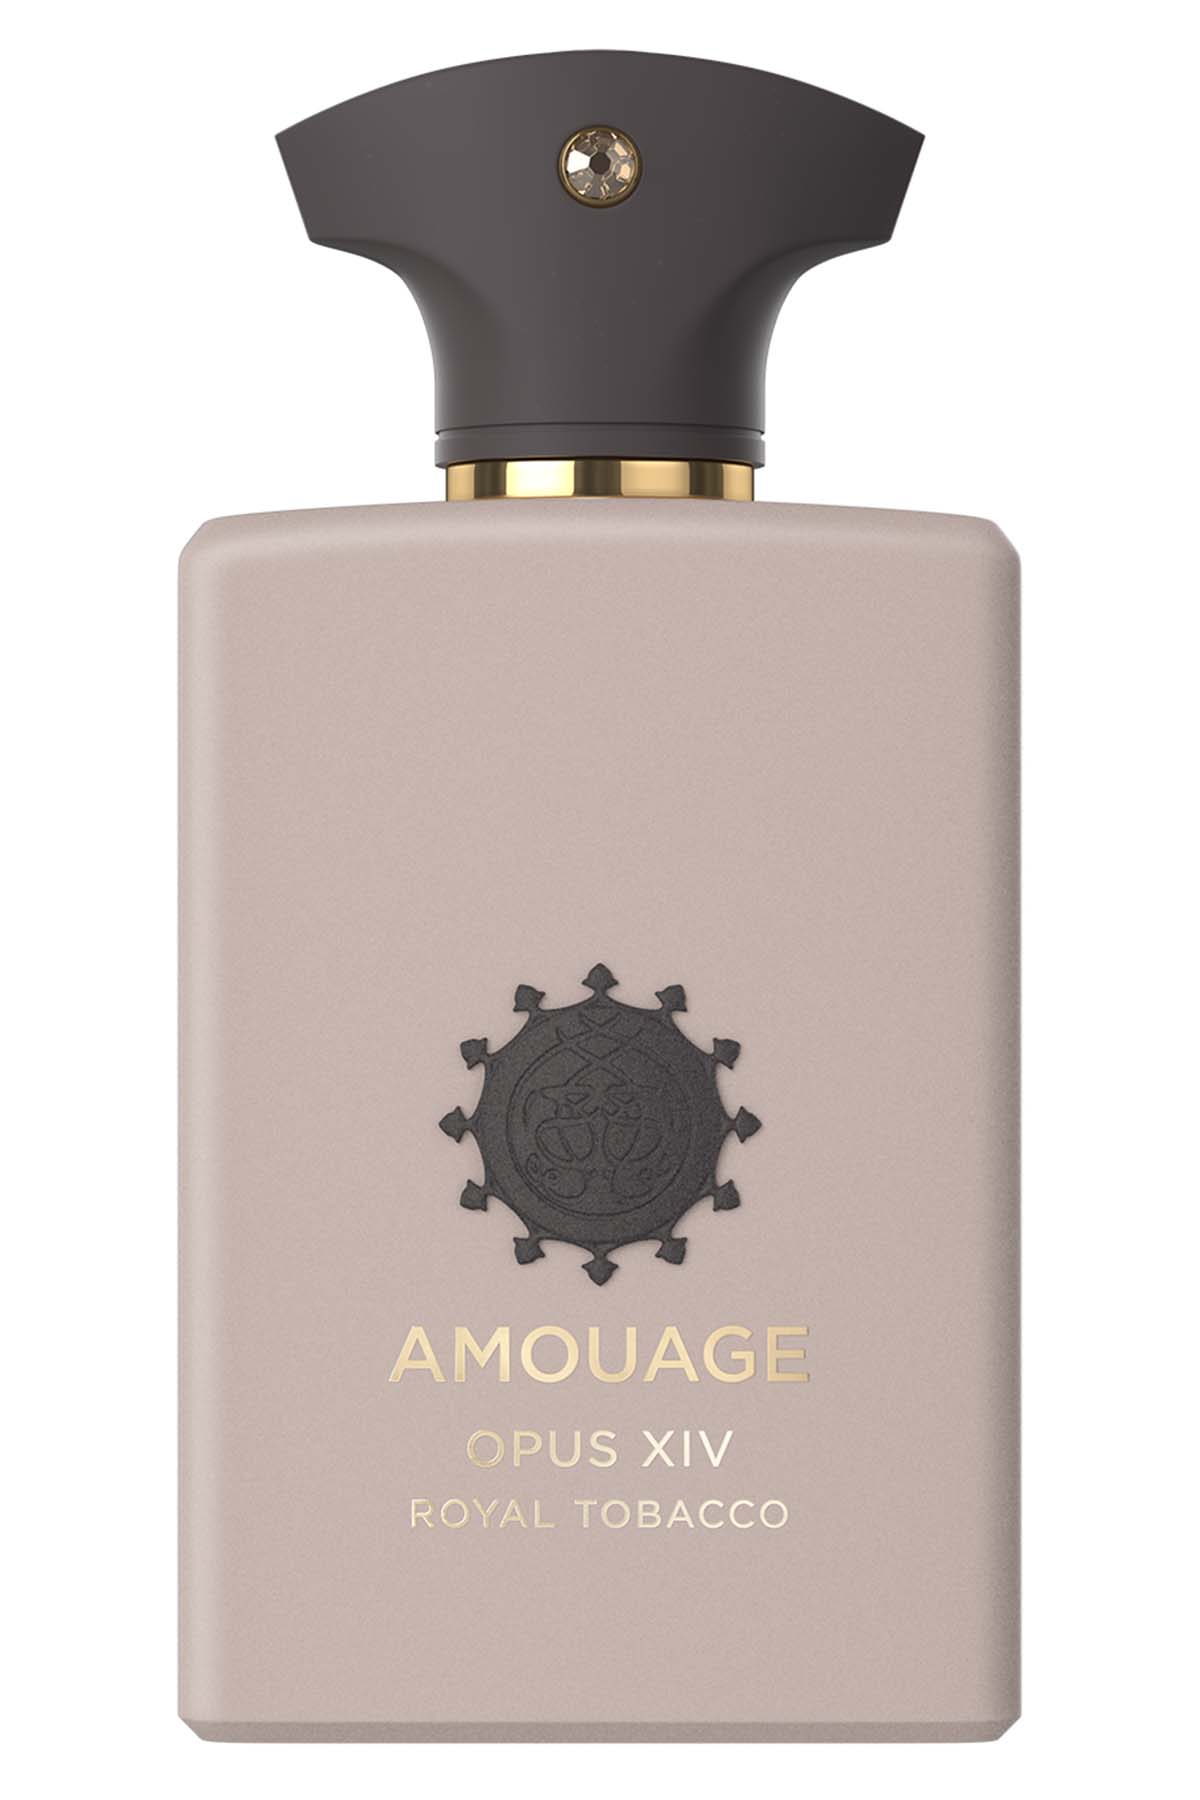 Amouage OPUS XIV Royal Tobacco Eau de Parfum